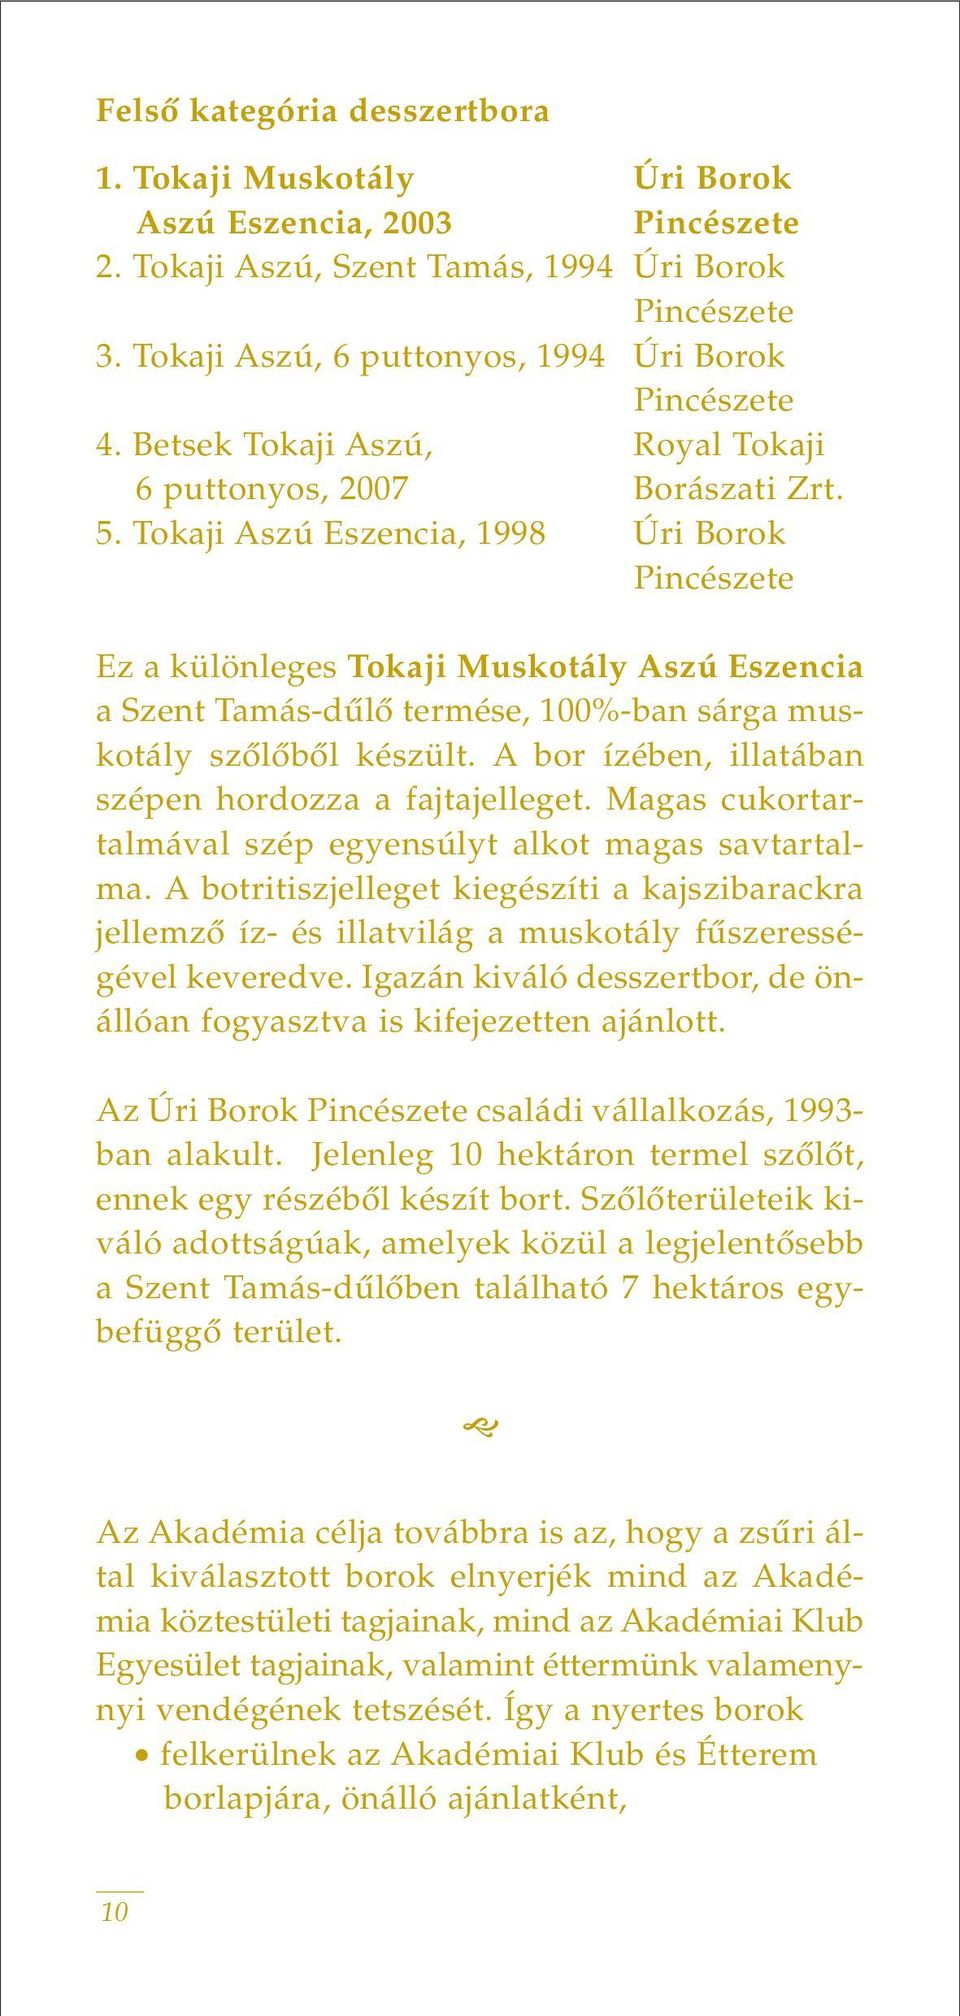 Tokaji Aszú Eszencia, 1998 Úri Borok Ez a különleges Tokaji Muskotály Aszú Eszencia a Szent Tamás-dûlô termése, 100%-ban sárga muskotály szôlôbôl készült.